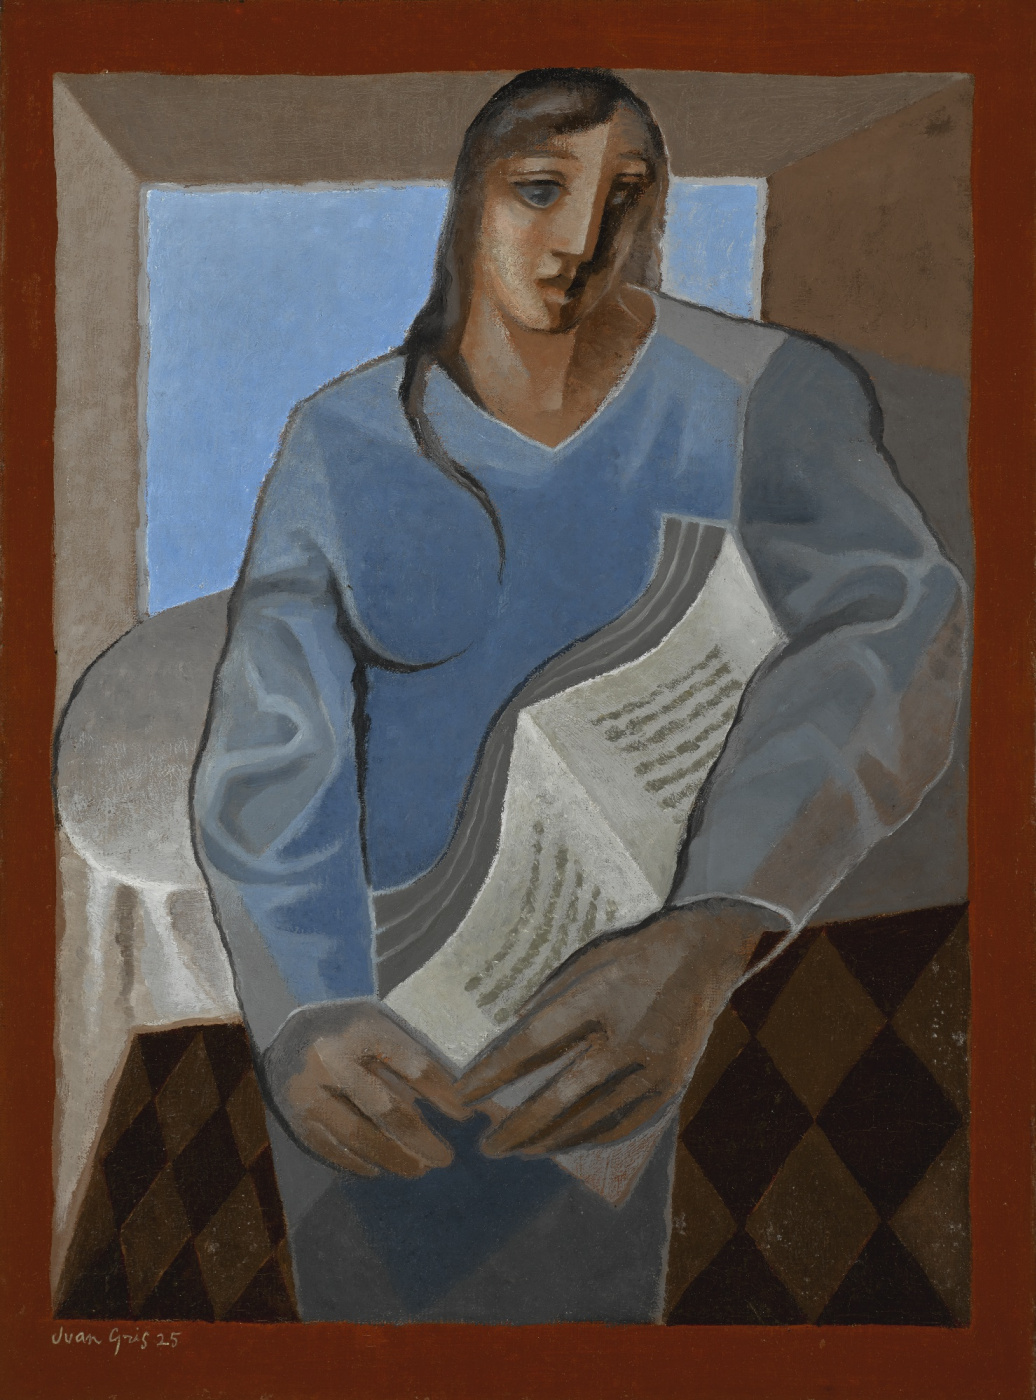 Juan Gris. Woman with book